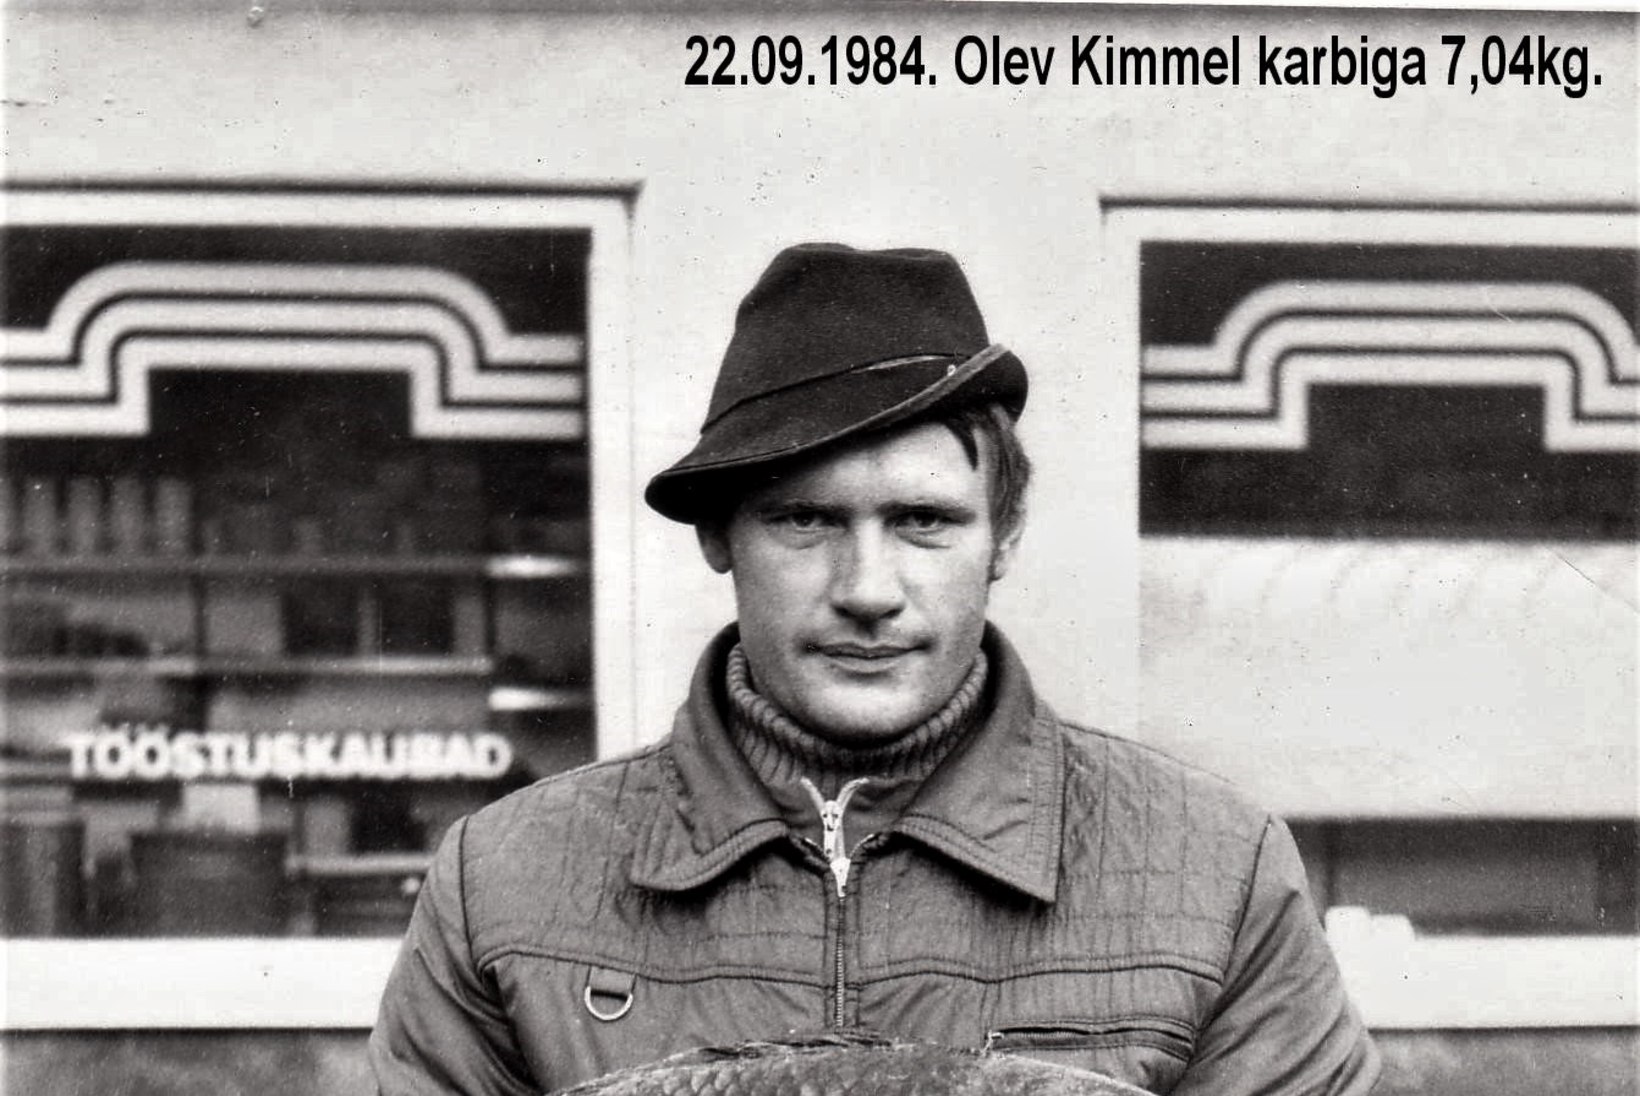 Veterankalamees Katenevi päevikud 1984: Peipsis siiga palju, aga mõõt väiksem